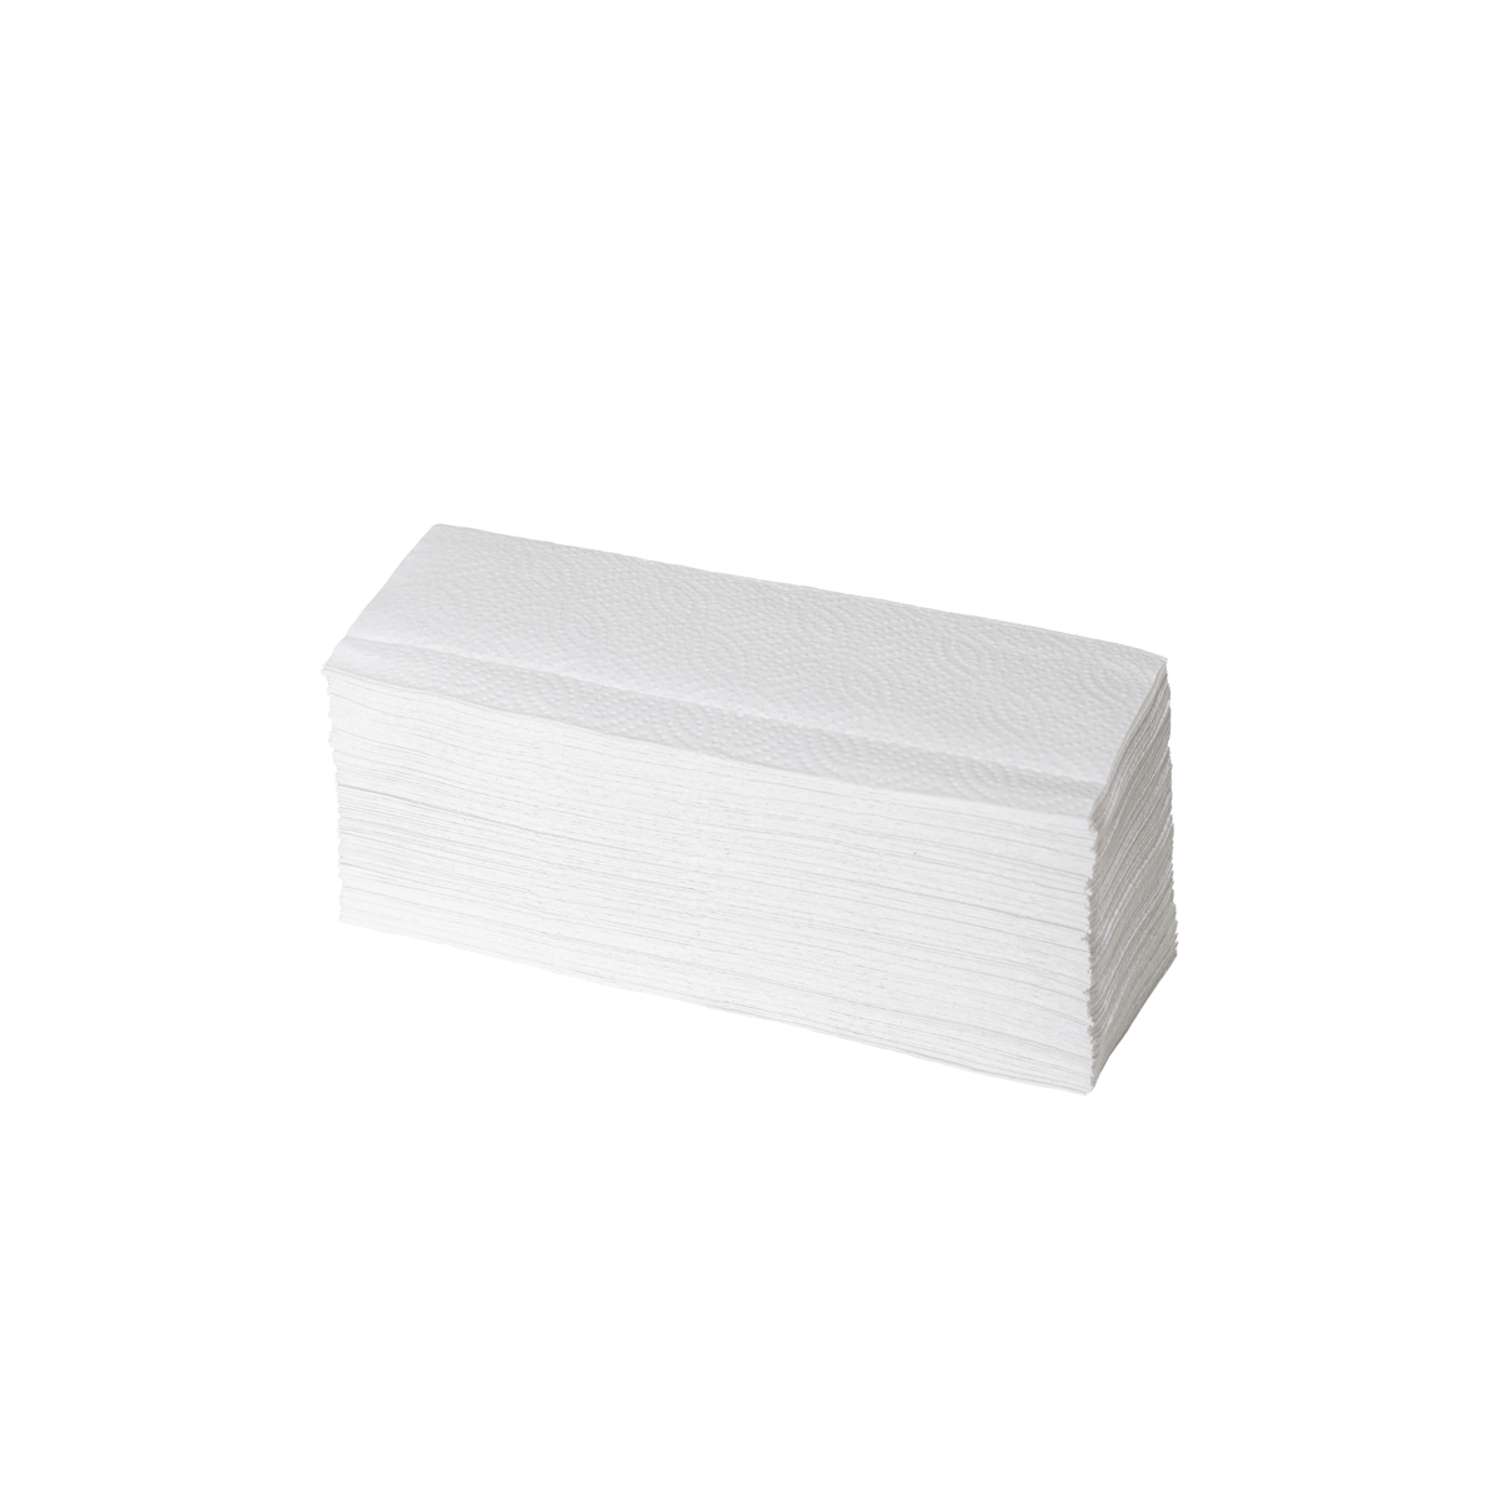 Полотенца бумажные Бумага Сити двухслойные Z сложение 200 листов в пачке система Н2/20 пачек в коробке - фото 2